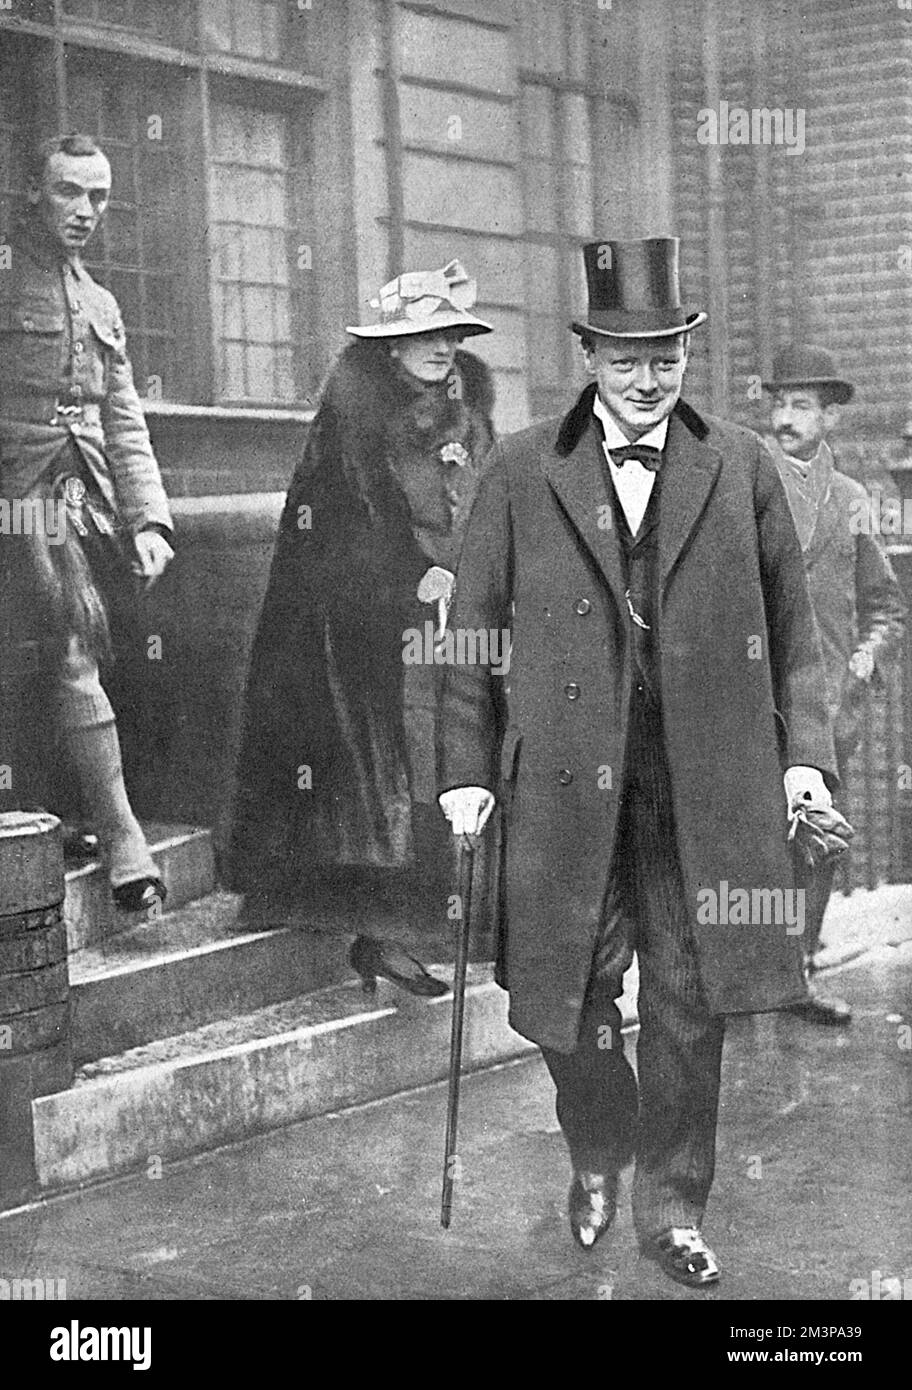 Sir Winston Churchill (1874-1965) photographié en 1916, revenant de la ligne de front, disant que son "esprit est maintenant clair", pour parler en faveur du rappel de Lord Fisher à l'Amirauté. Ici, il quitte sa maison avec sa femme Clementine Churchill (1885-1977), en route pour Westminster. Date: 1916 Banque D'Images